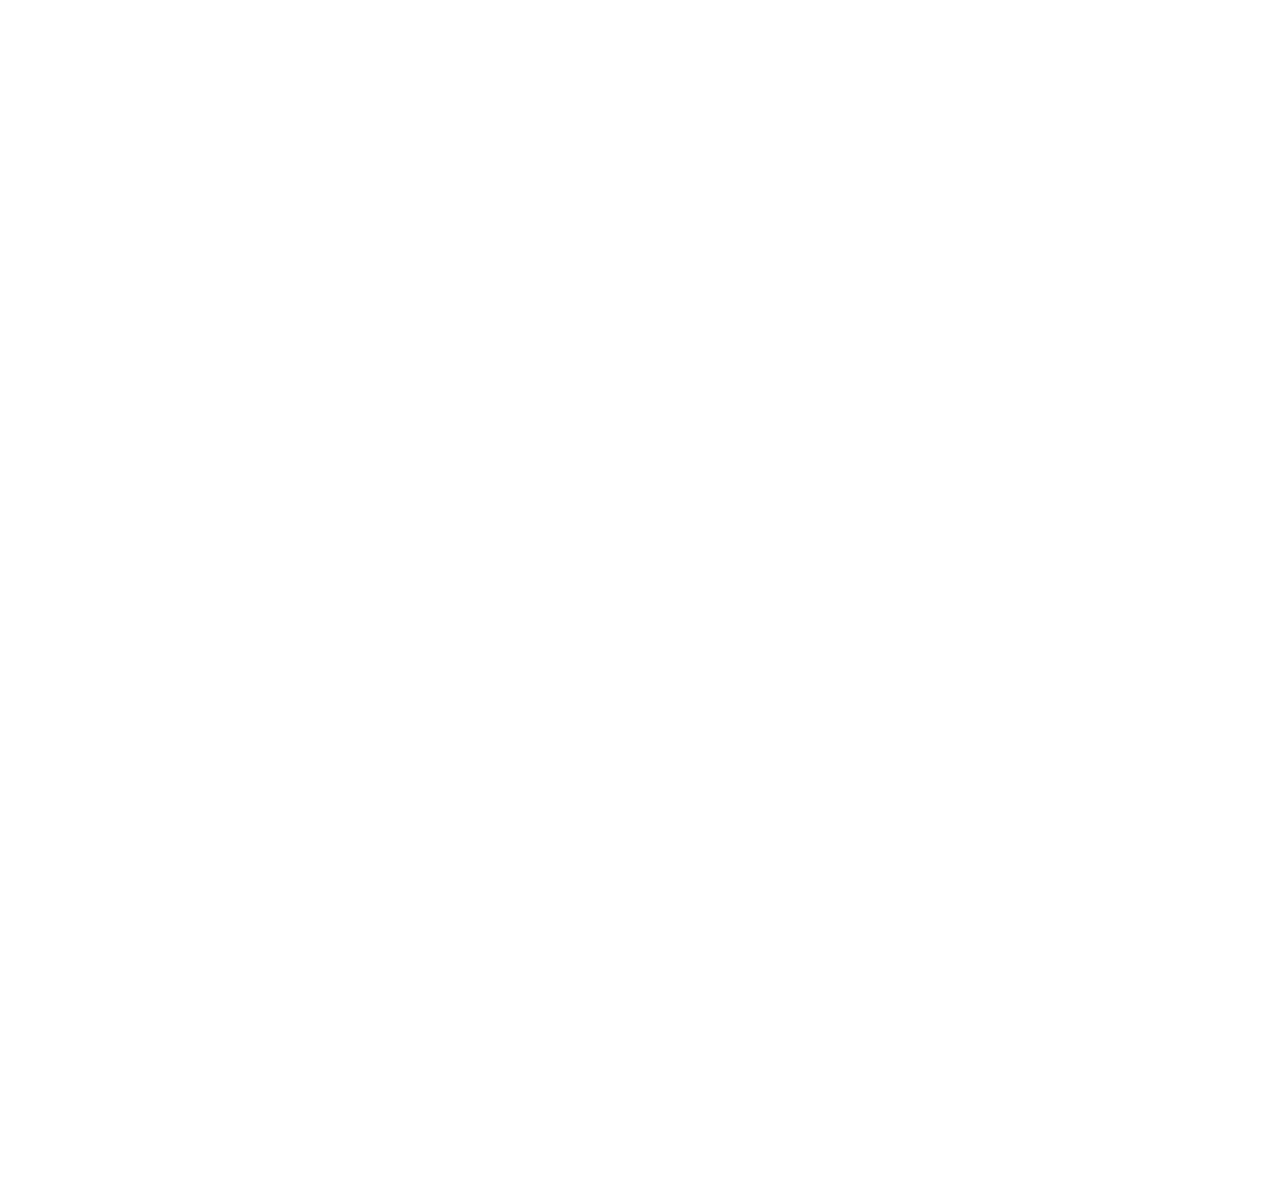 PAWIA's web page